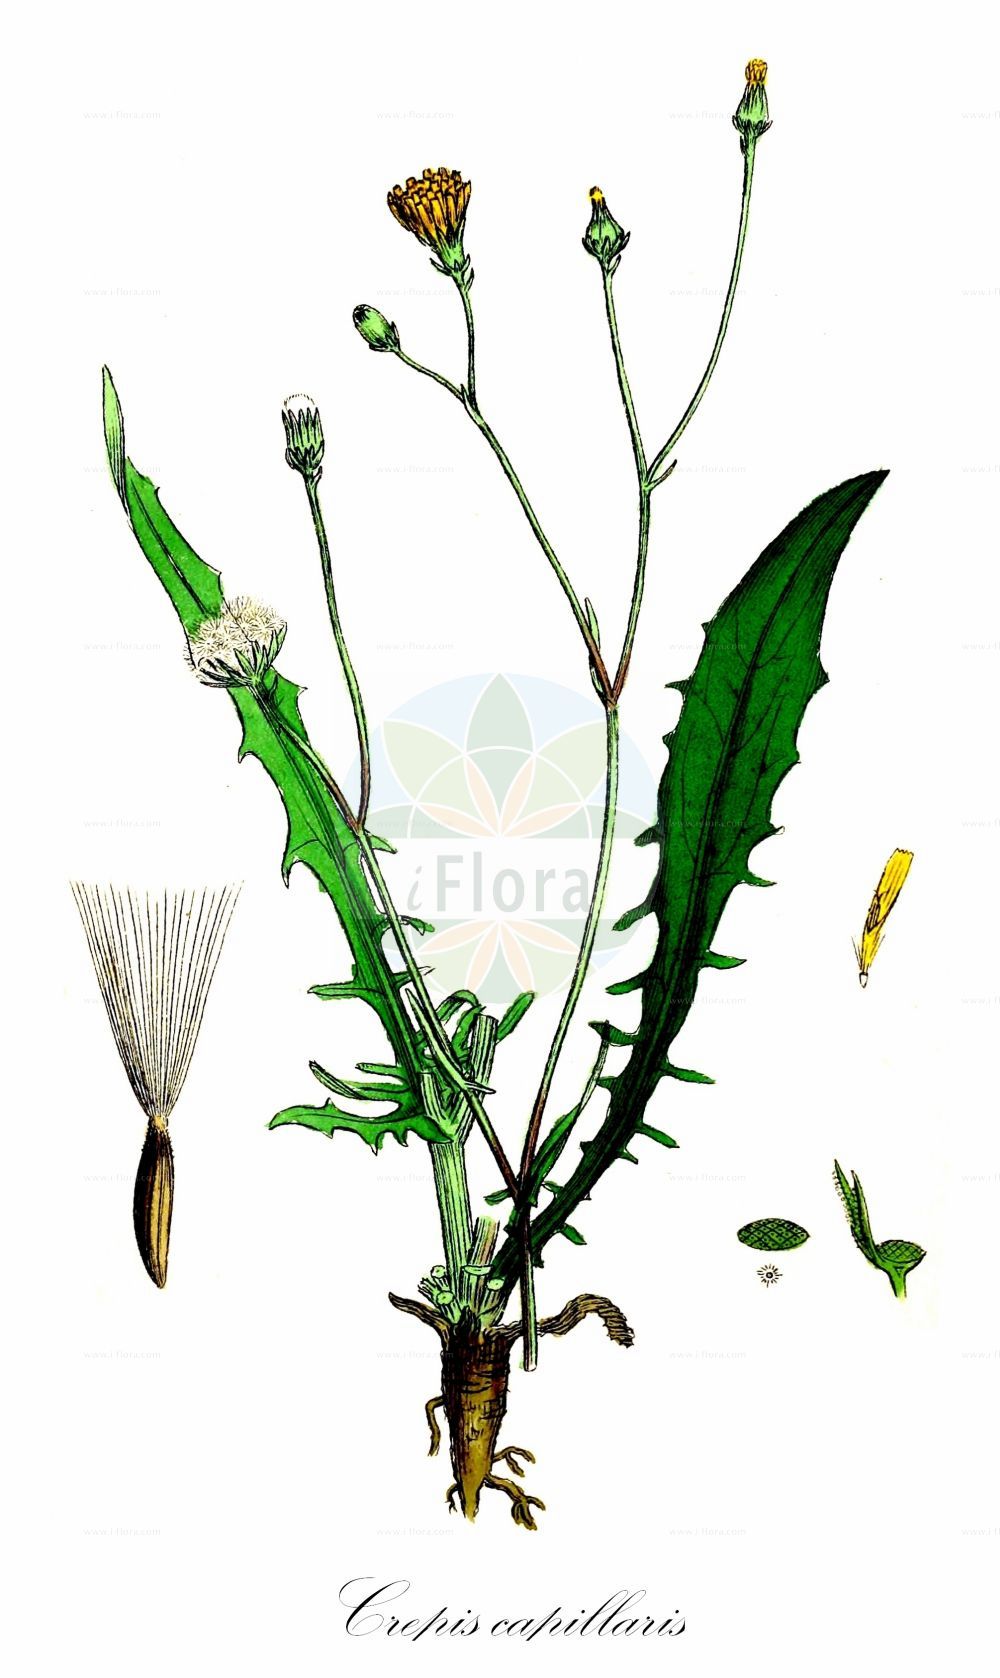 Historische Abbildung von Crepis capillaris (Kleinköpfiger Pippau - Smooth Hawk's-beard). Das Bild zeigt Blatt, Bluete, Frucht und Same. ---- Historical Drawing of Crepis capillaris (Kleinköpfiger Pippau - Smooth Hawk's-beard). The image is showing leaf, flower, fruit and seed.(Crepis capillaris,Kleinköpfiger Pippau,Smooth Hawk's-beard,Crepis agrestis,Crepis capillaris,Crepis diffusa,Crepis gaditana,Crepis virens,Lapsana capillaris,Kleinkoepfiger Pippau,Haarstieliger Pippau,Smooth Hawk's-beard,Crepis,Pippau,Hawk's-beard,Asteraceae,Korbblütengewächse,Daisy family,Blatt,Bluete,Frucht,Same,leaf,flower,fruit,seed,Sowerby (1790-1813))